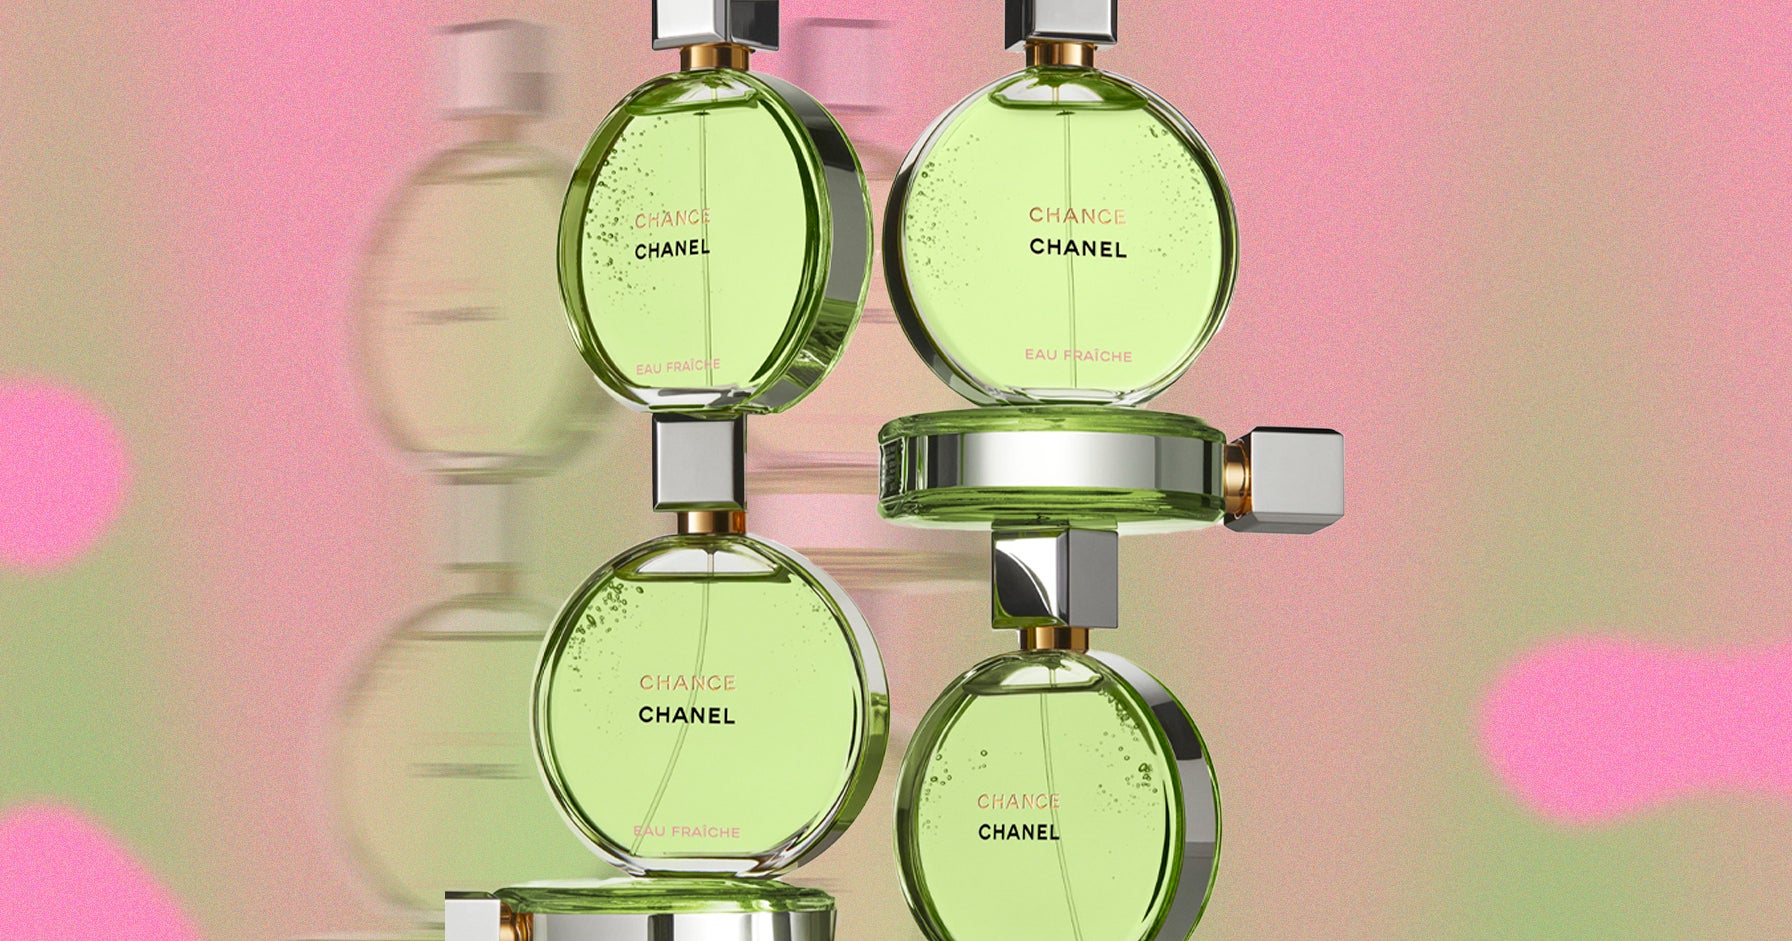 Chanel Chance Eau Fraiche eau de parfum review - Olivier Polge